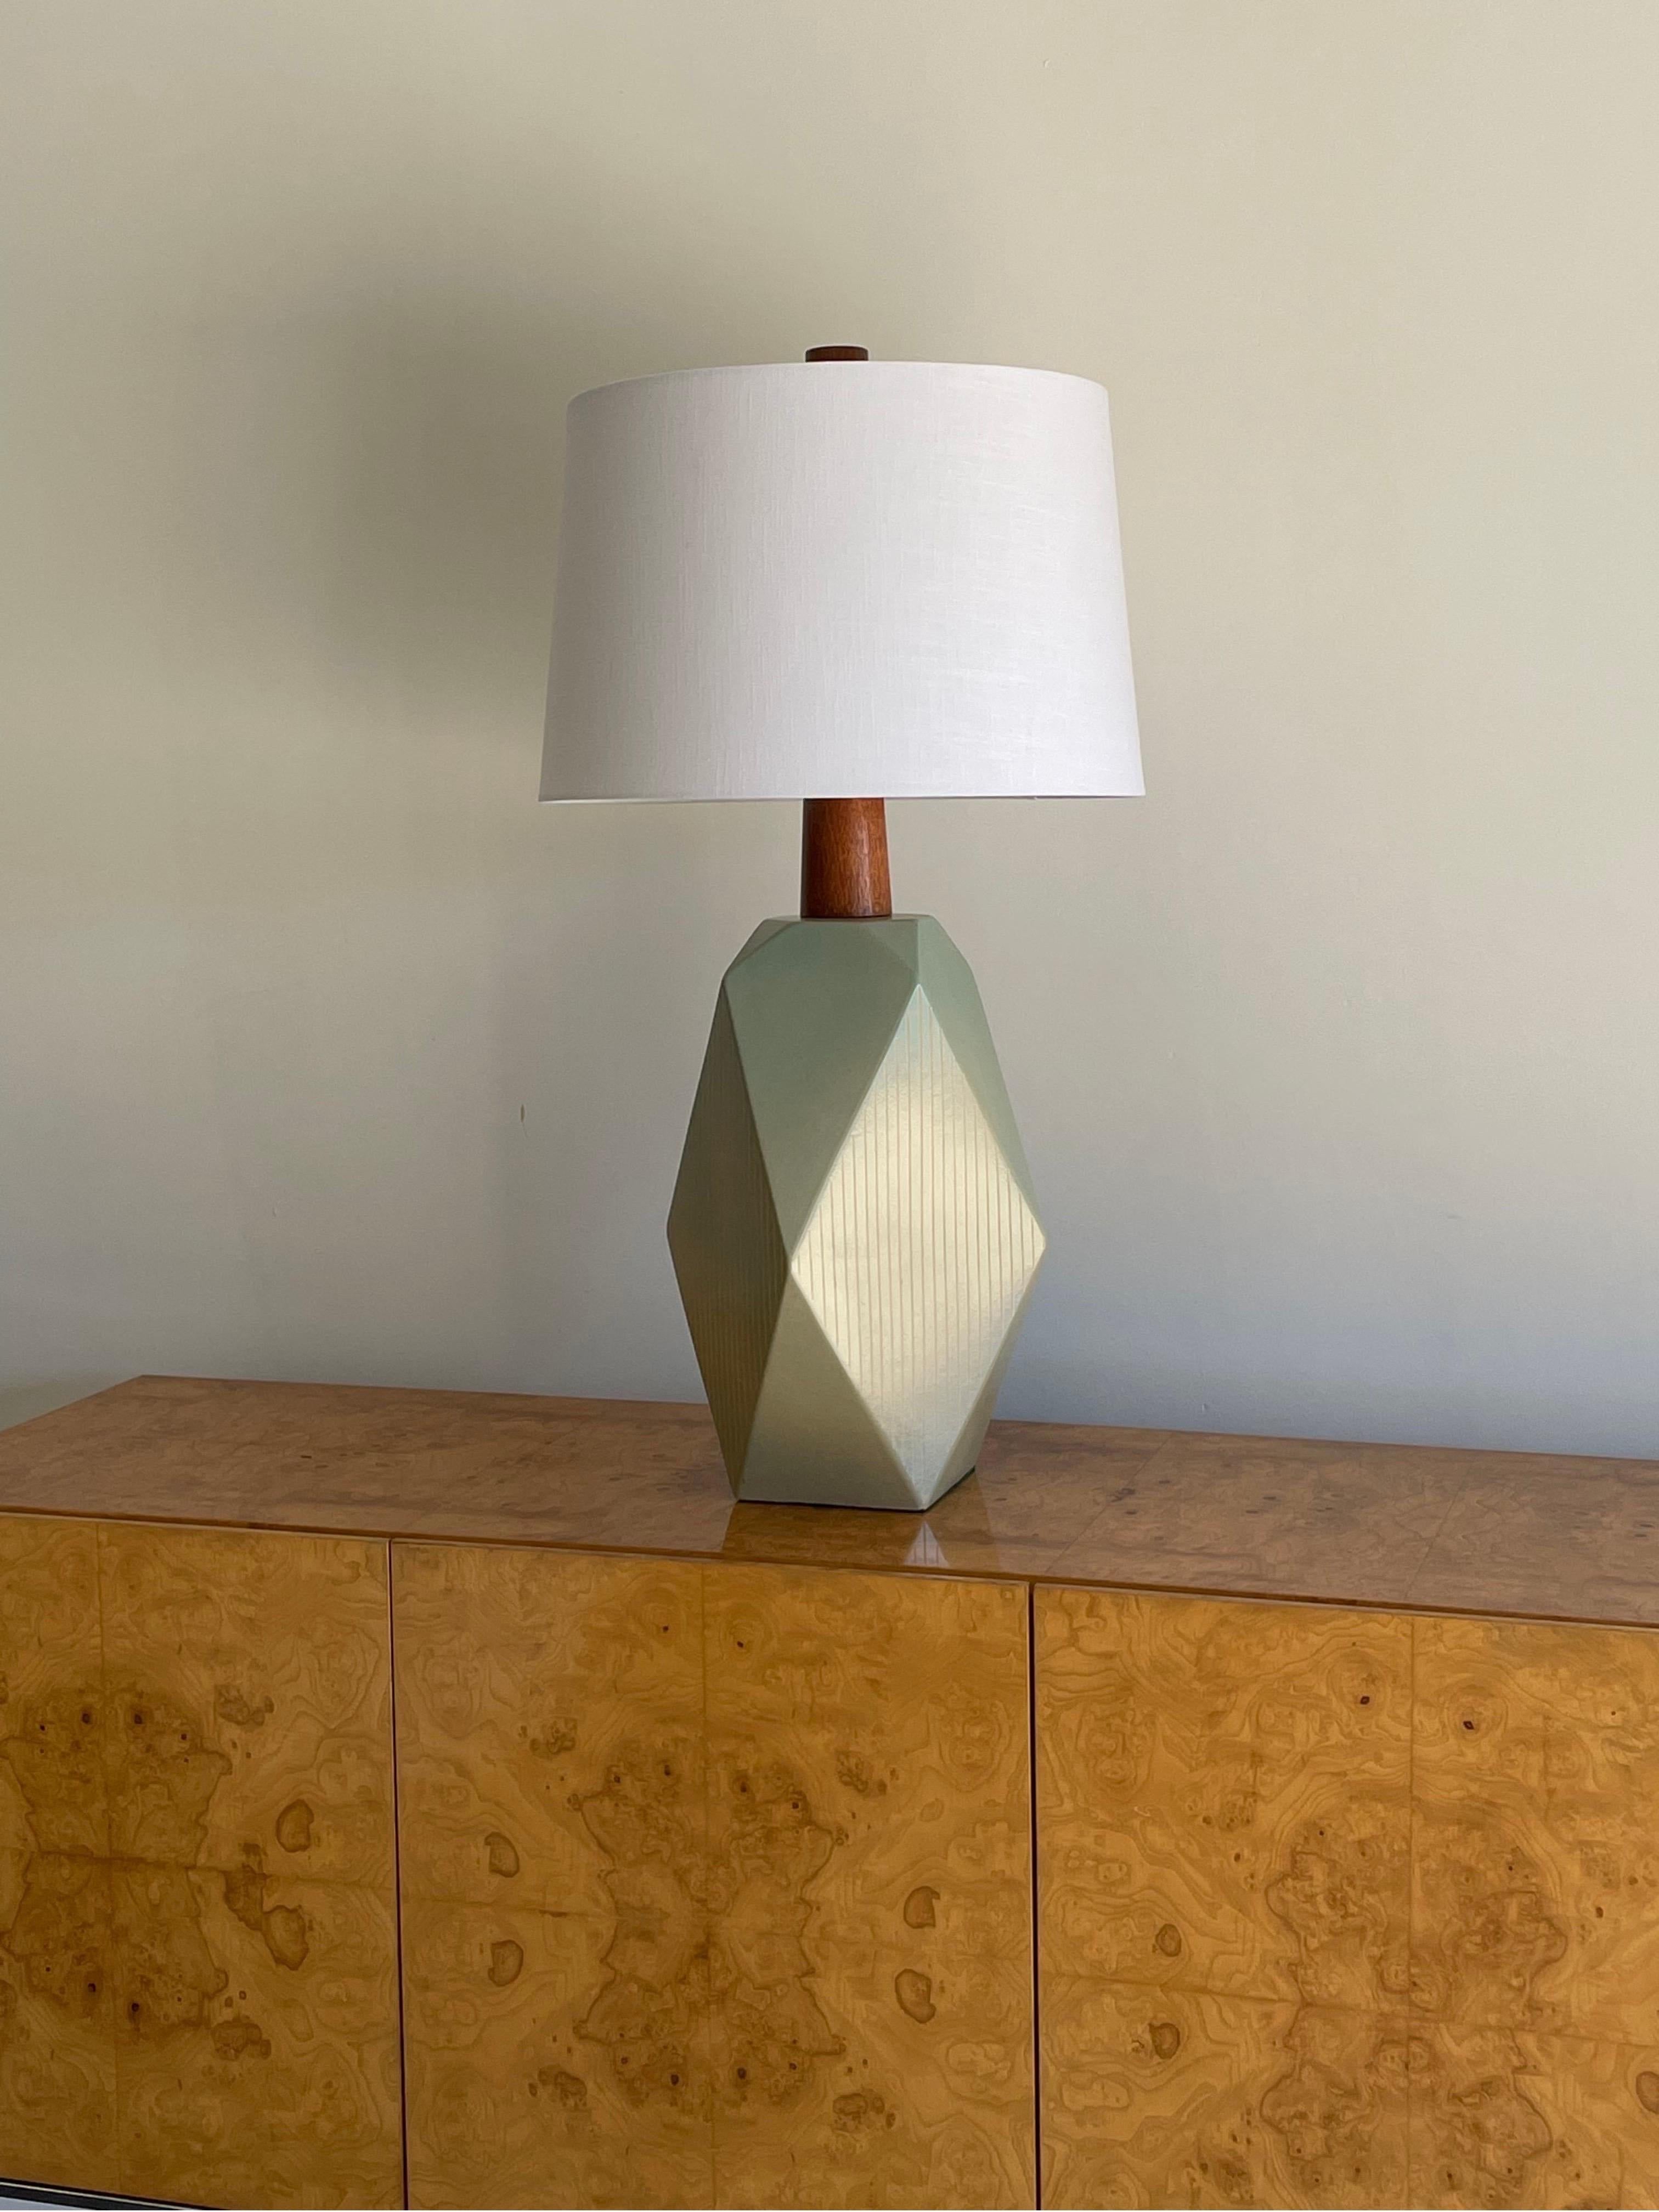 Merveilleuse et impressionnante lampe de table conçue par le célèbre duo de céramistes Jane et Gordon Martz. La couleur est un bleu/vert d'écume de mer qui est plus prédominant vers le haut et se transforme en crème vers le bas. 

Cette lampe est